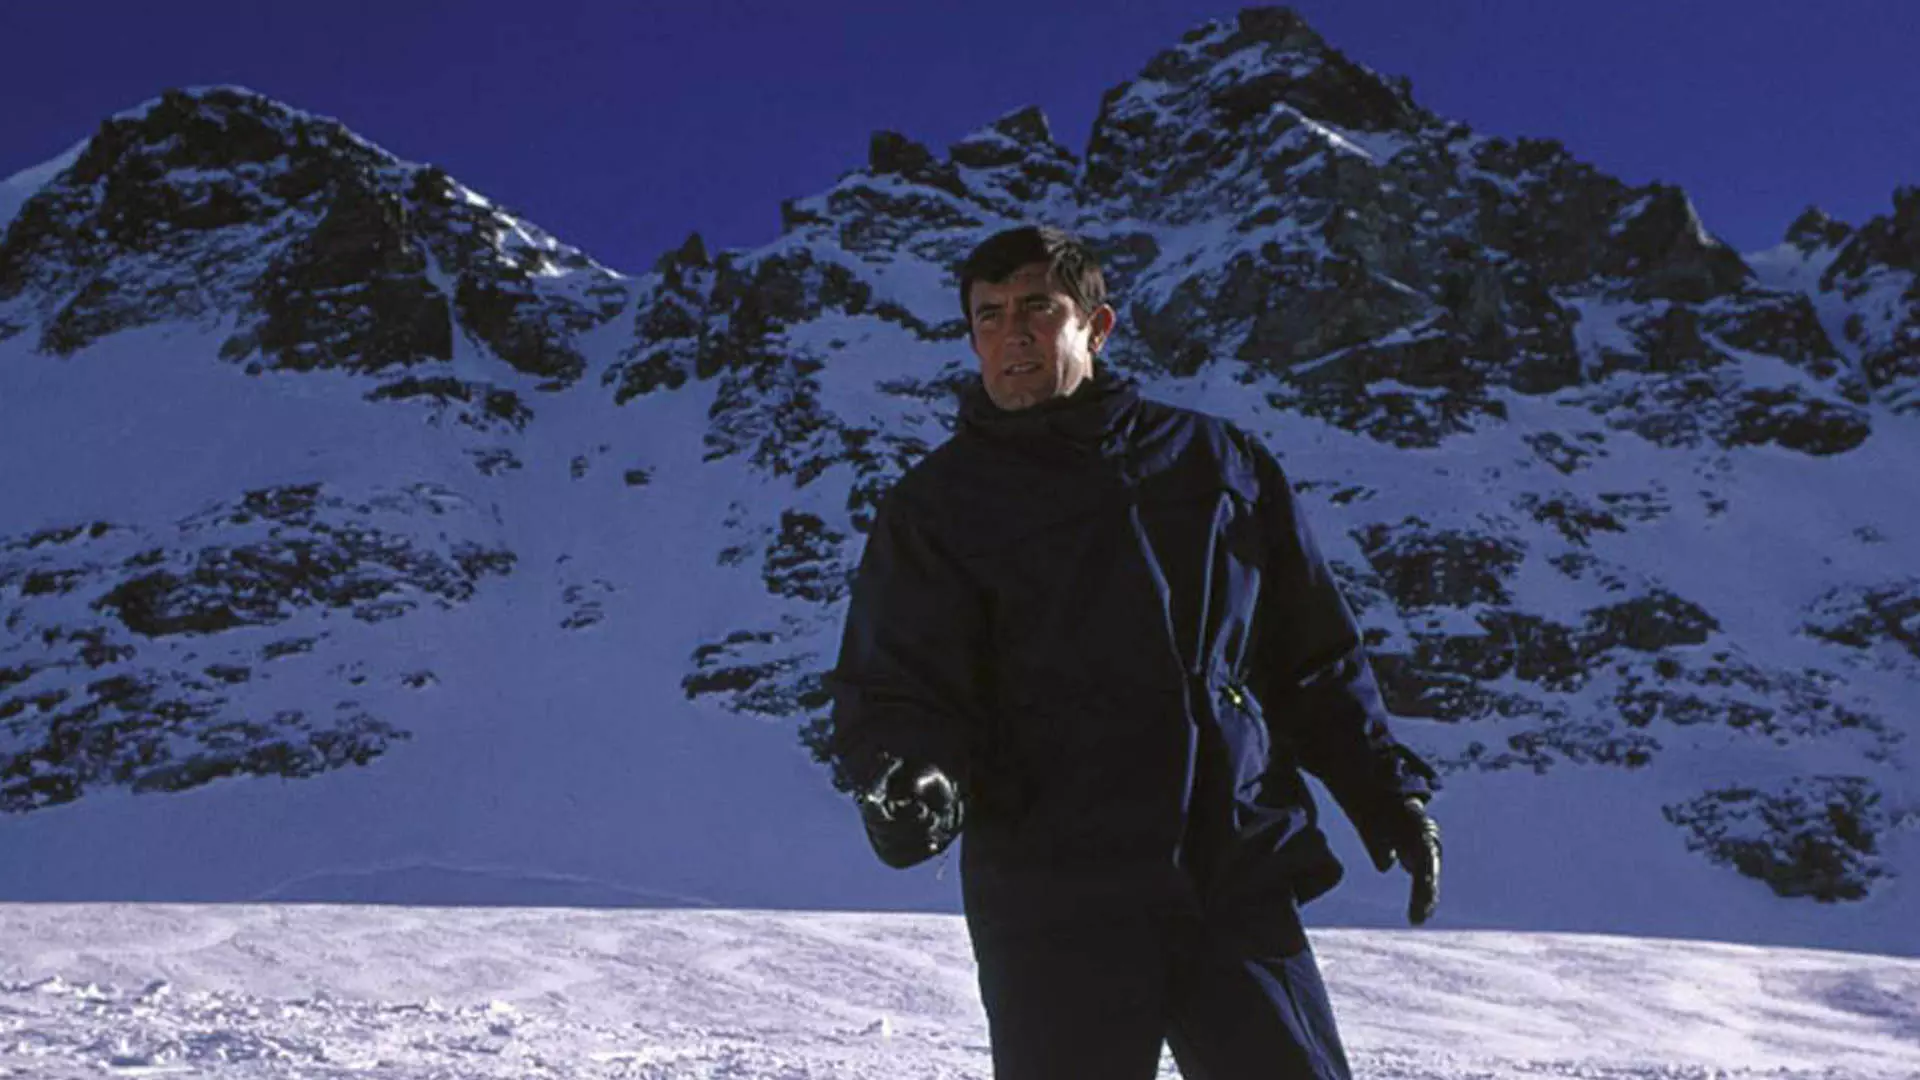 جیمز باند در برف و کوهستان در فیلم On Her Majesty's Secret Service